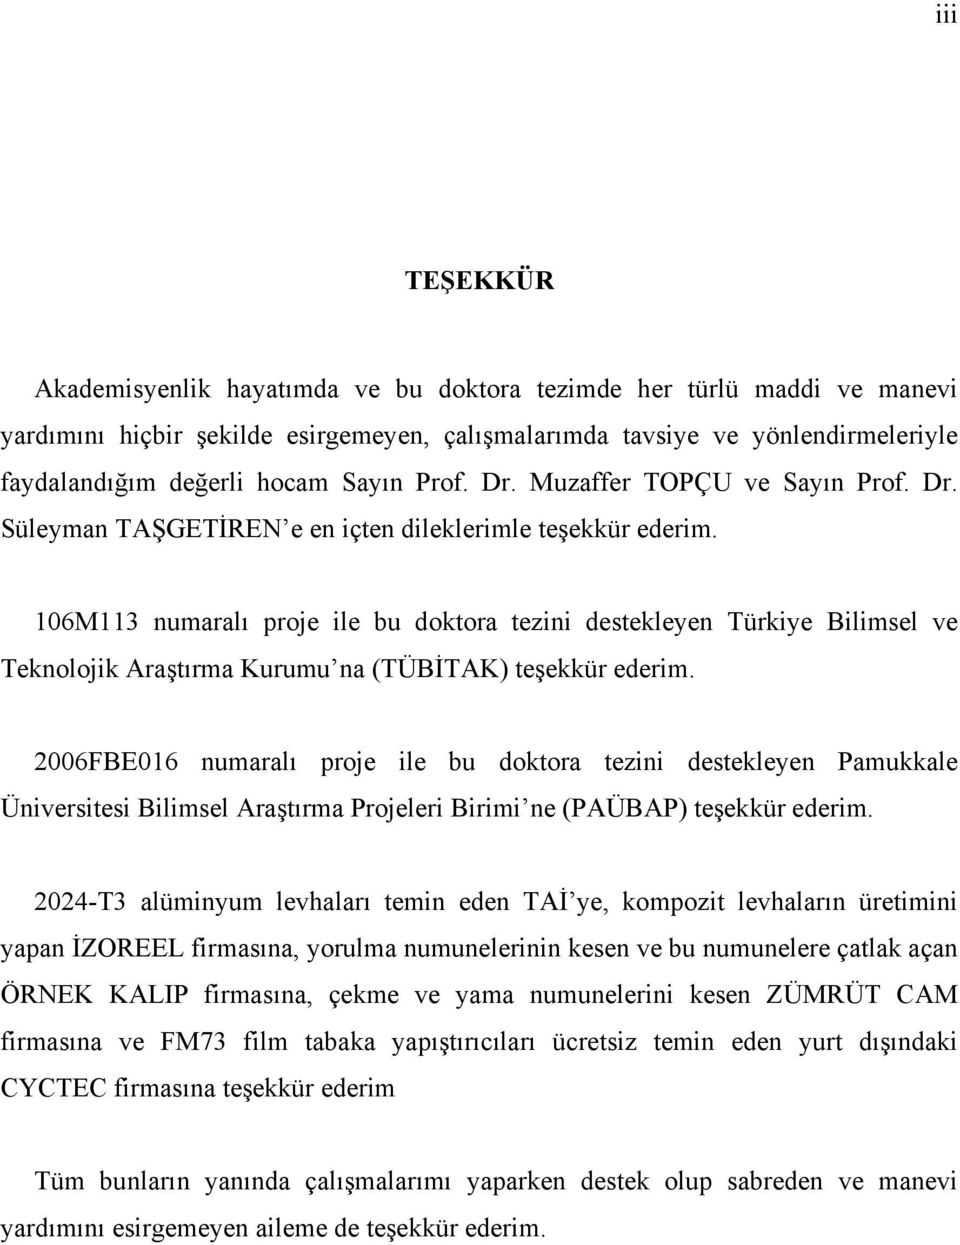 106M113 numaralı proje ile bu doktora tezini destekleyen Türkiye Bilimsel ve Teknolojik Araştırma Kurumu na (TÜBİTAK) teşekkür ederim.